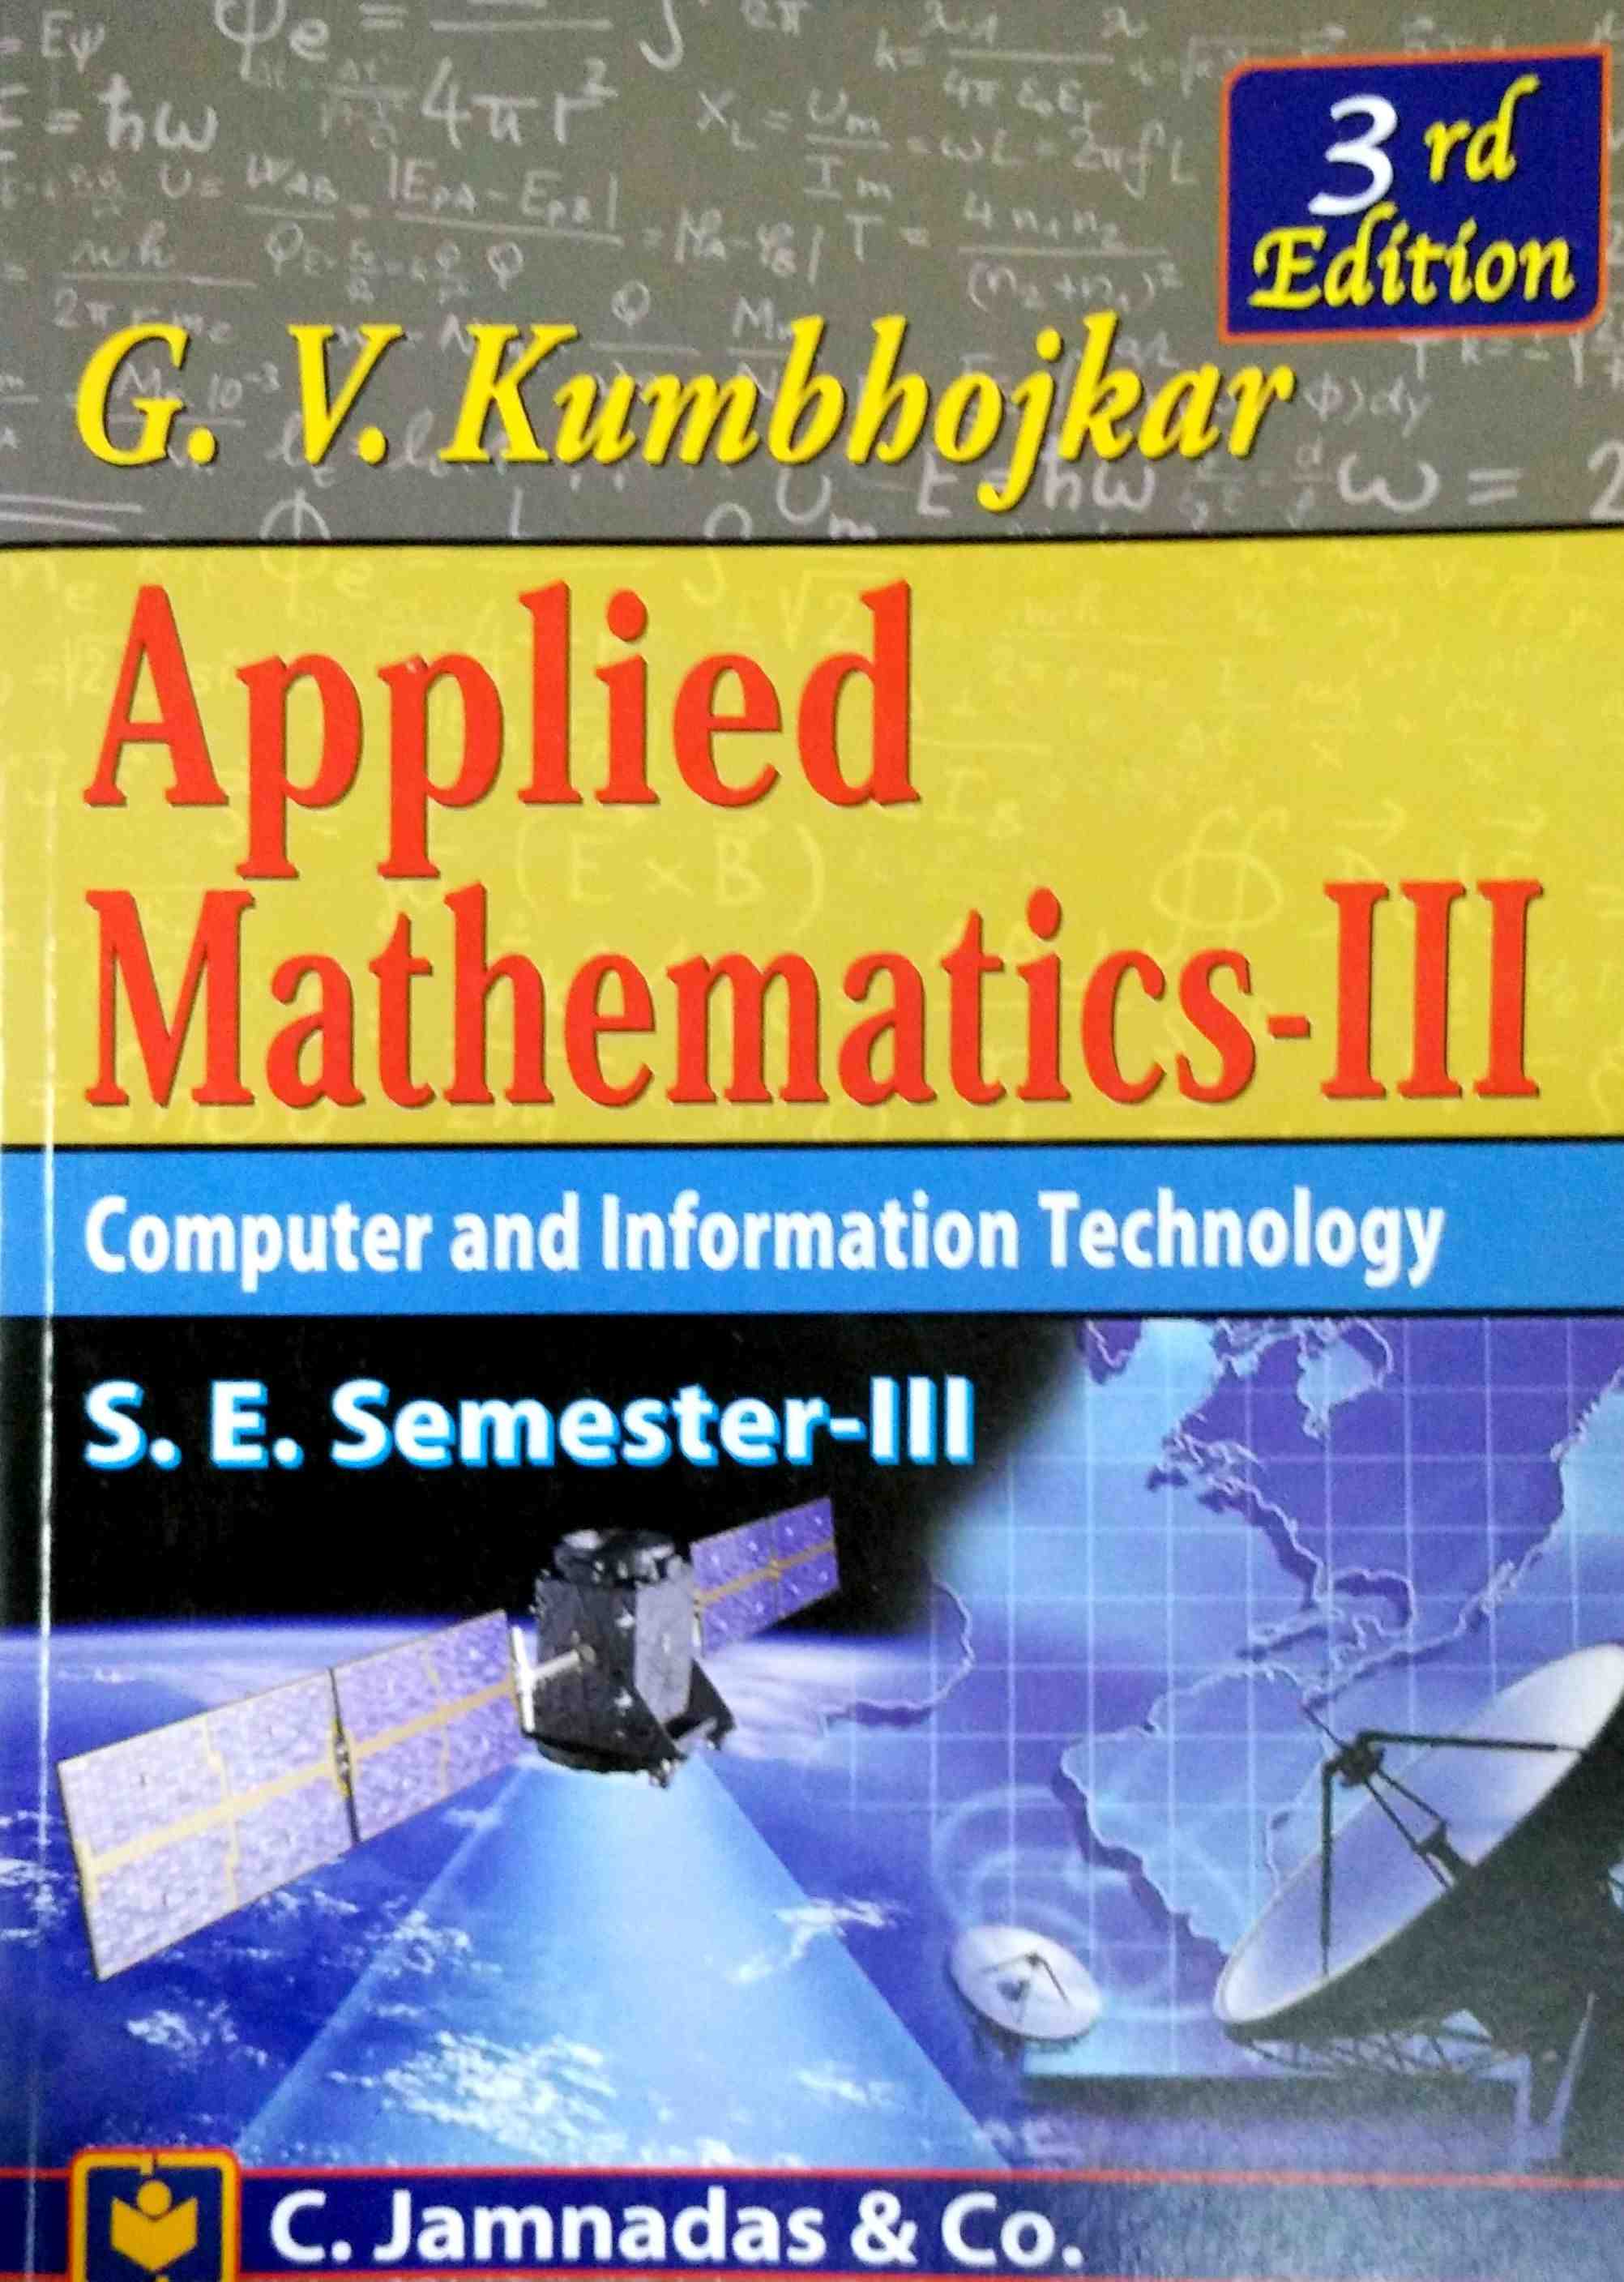 Mathsmaster 3 Books Pdf Filel